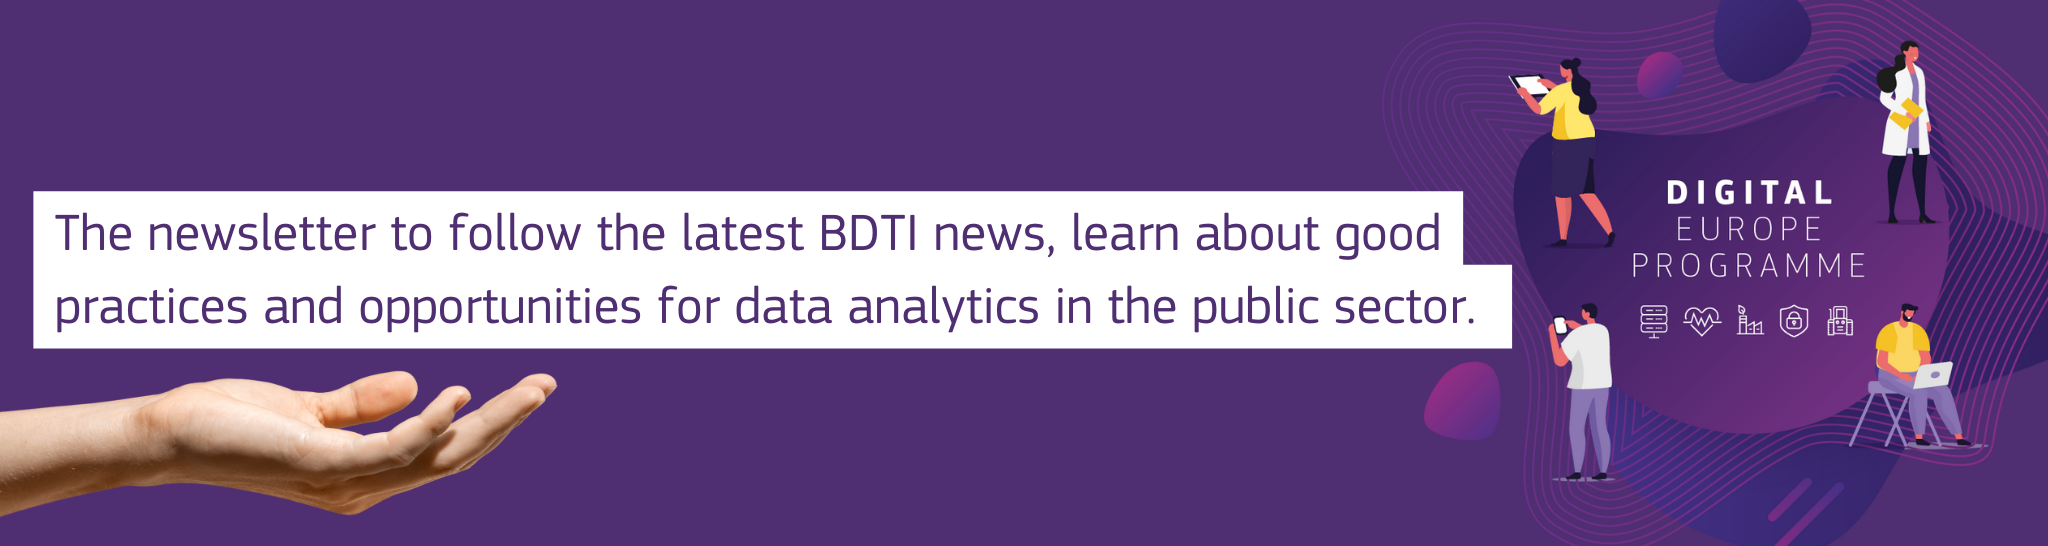 BDTI-Newsletter_banner